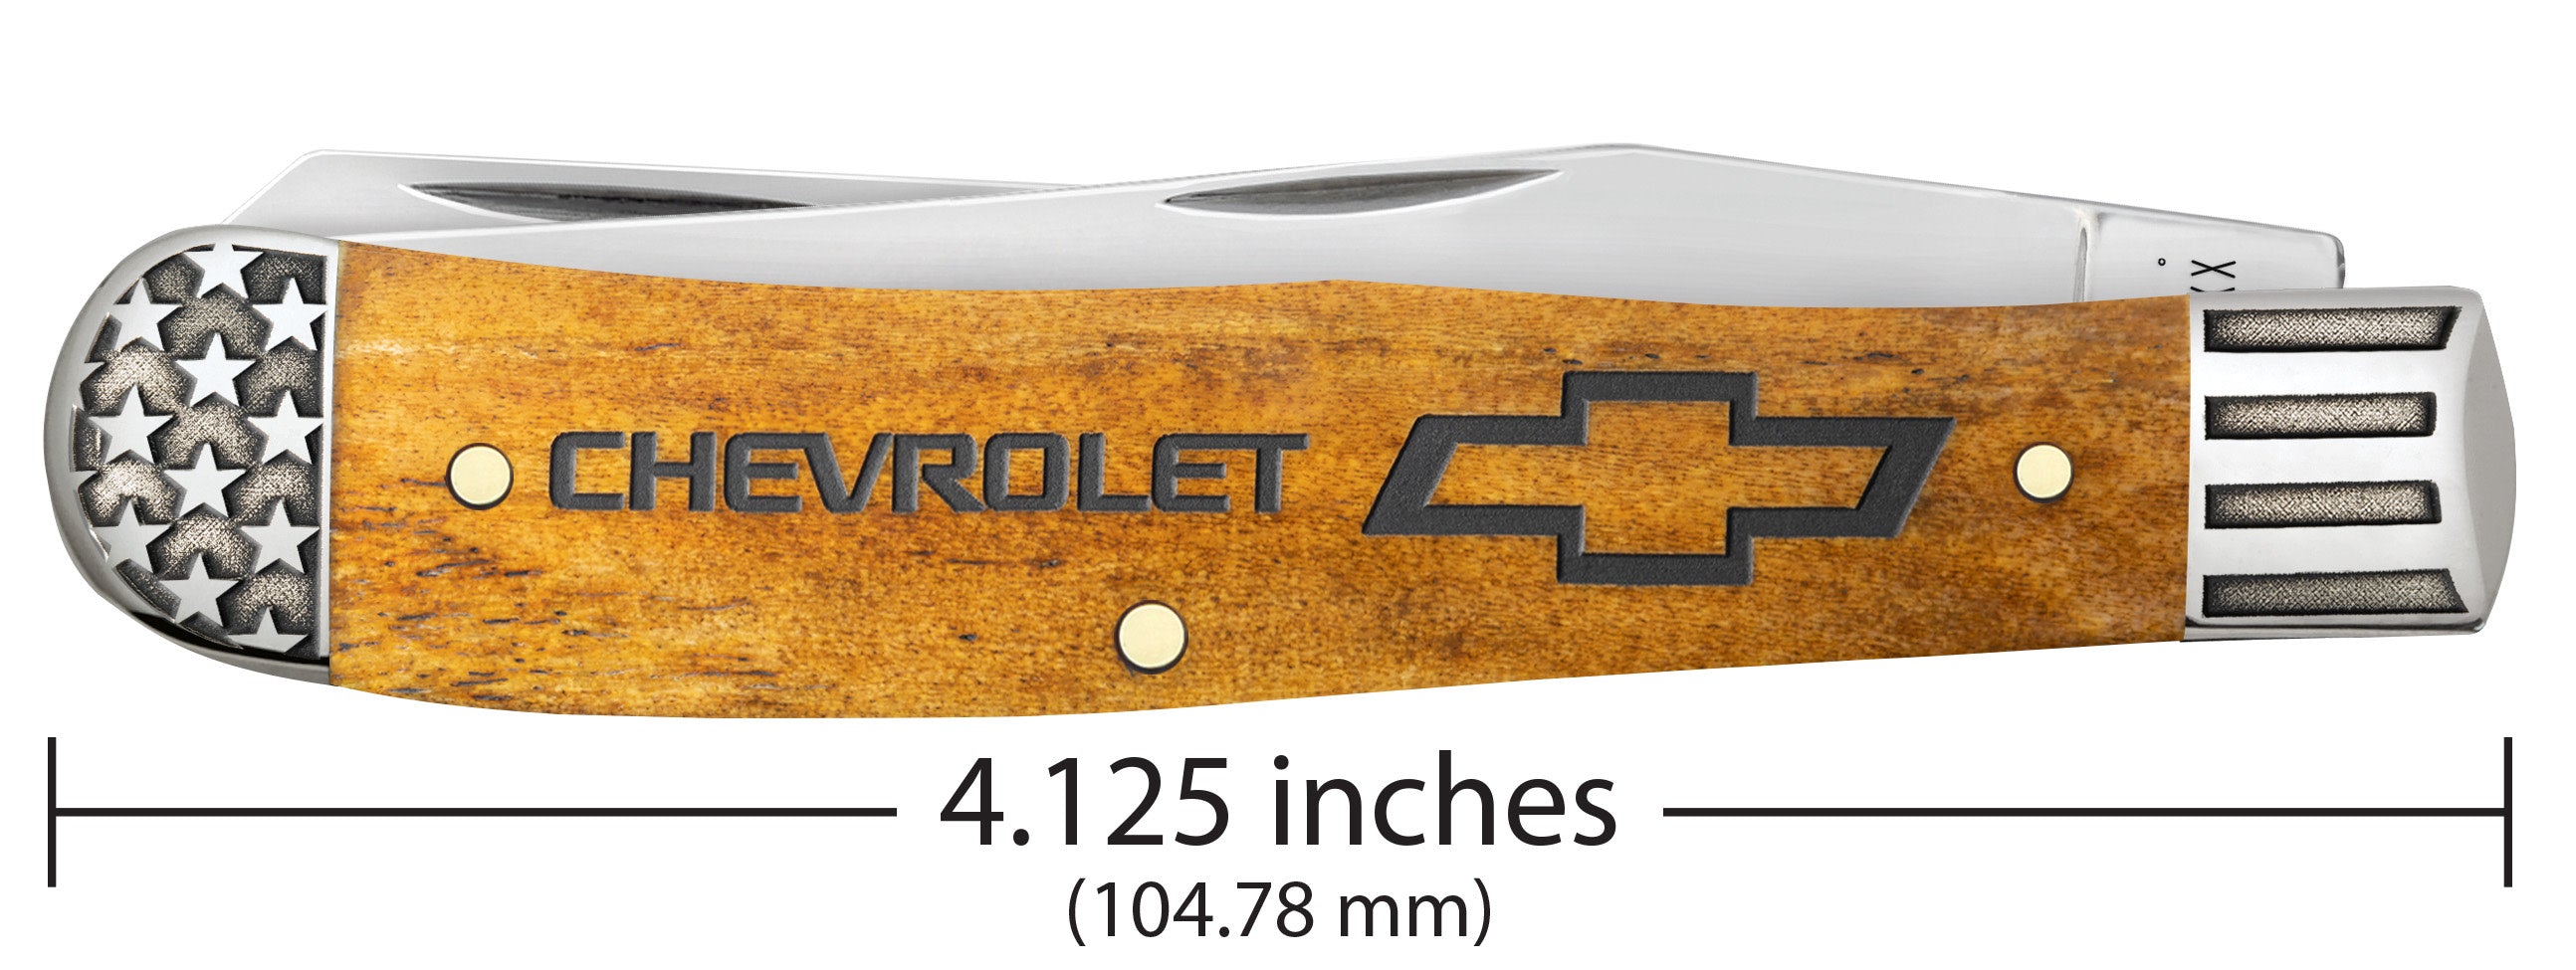 Chevrolet®  Embellished Smooth Antique Bone Trapper Knife Dimensions